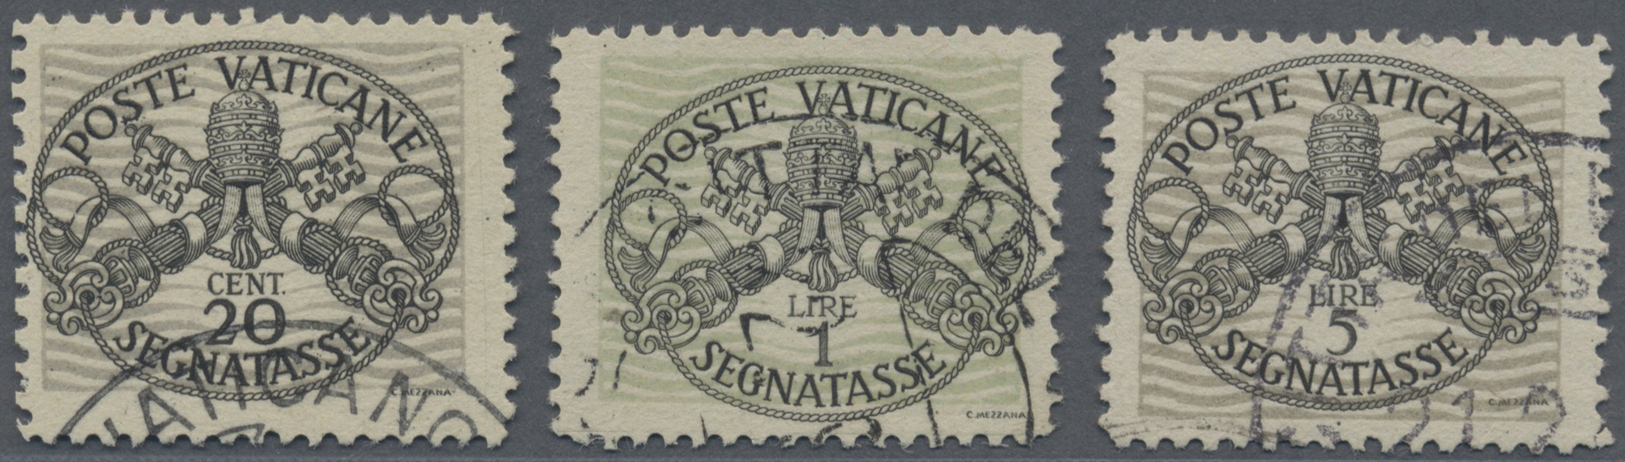 O Vatikan - Portomarken: 1946, Wappenzeichnung 20 C, 1 L Und 5 L, Breite Unterdrucklinien Auf Grauem Papier, I A - Taxes